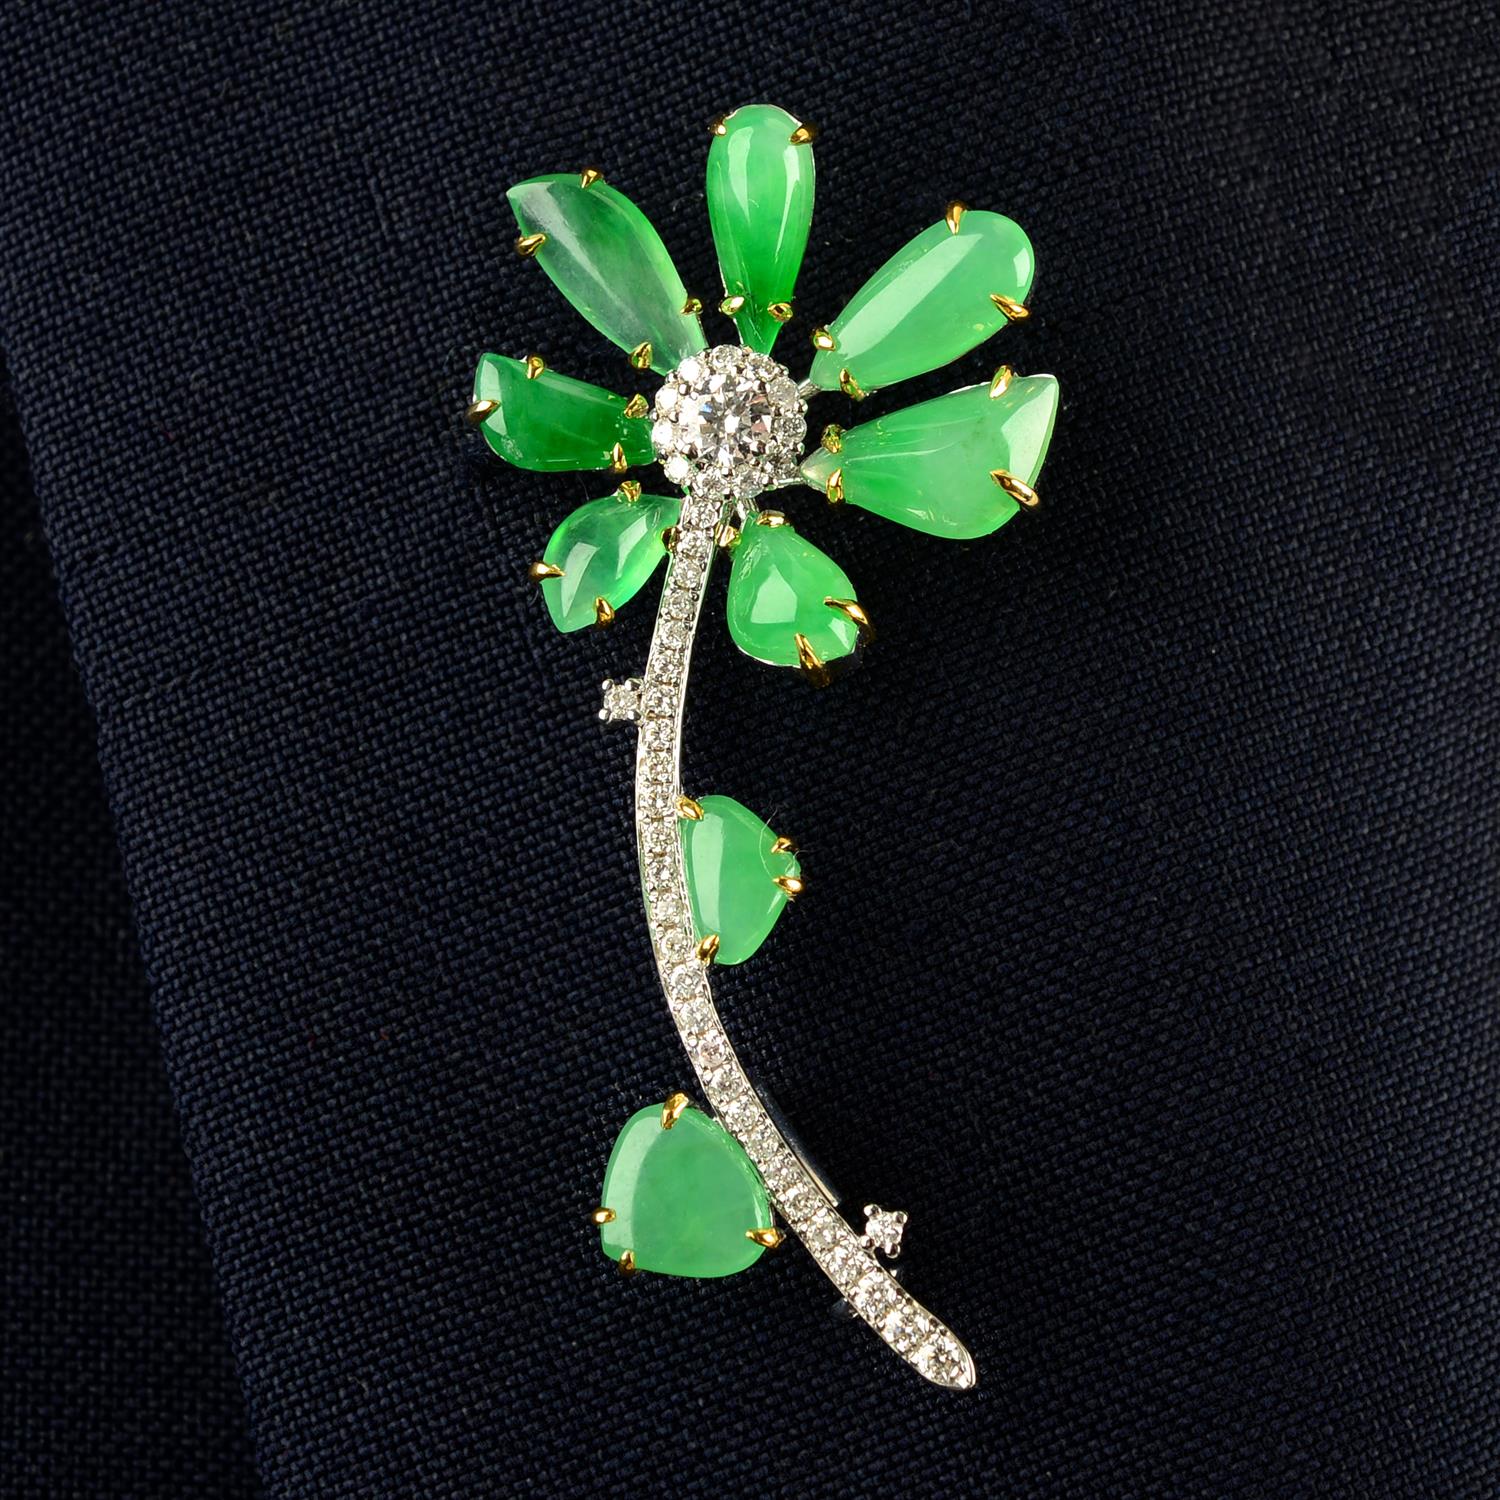 A jadeite jade and diamond floral brooch.